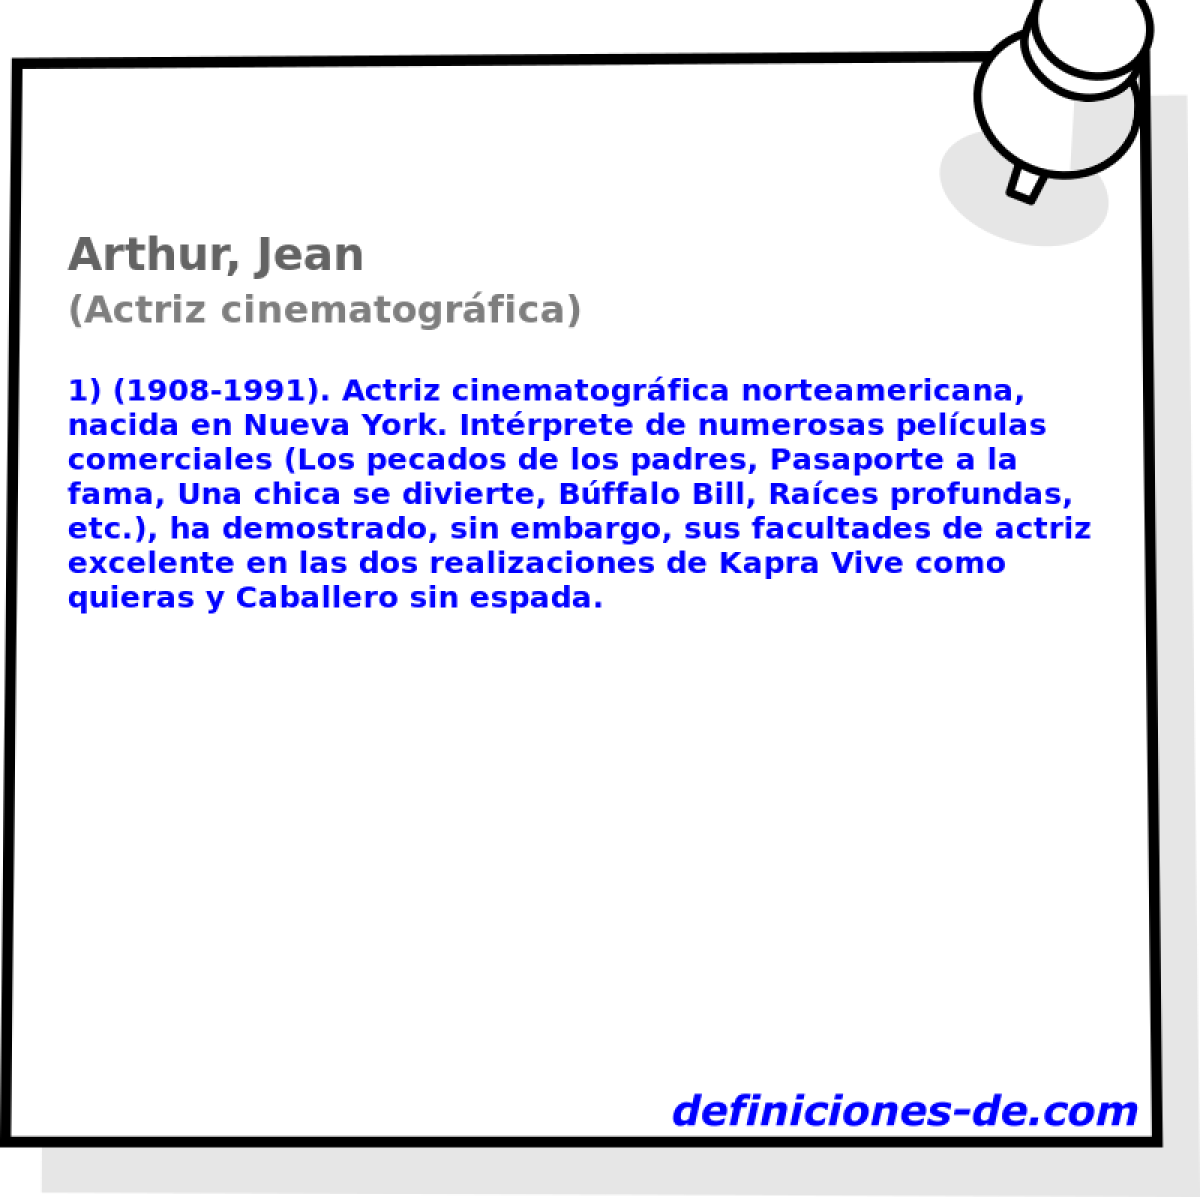 Arthur, Jean (Actriz cinematogrfica)